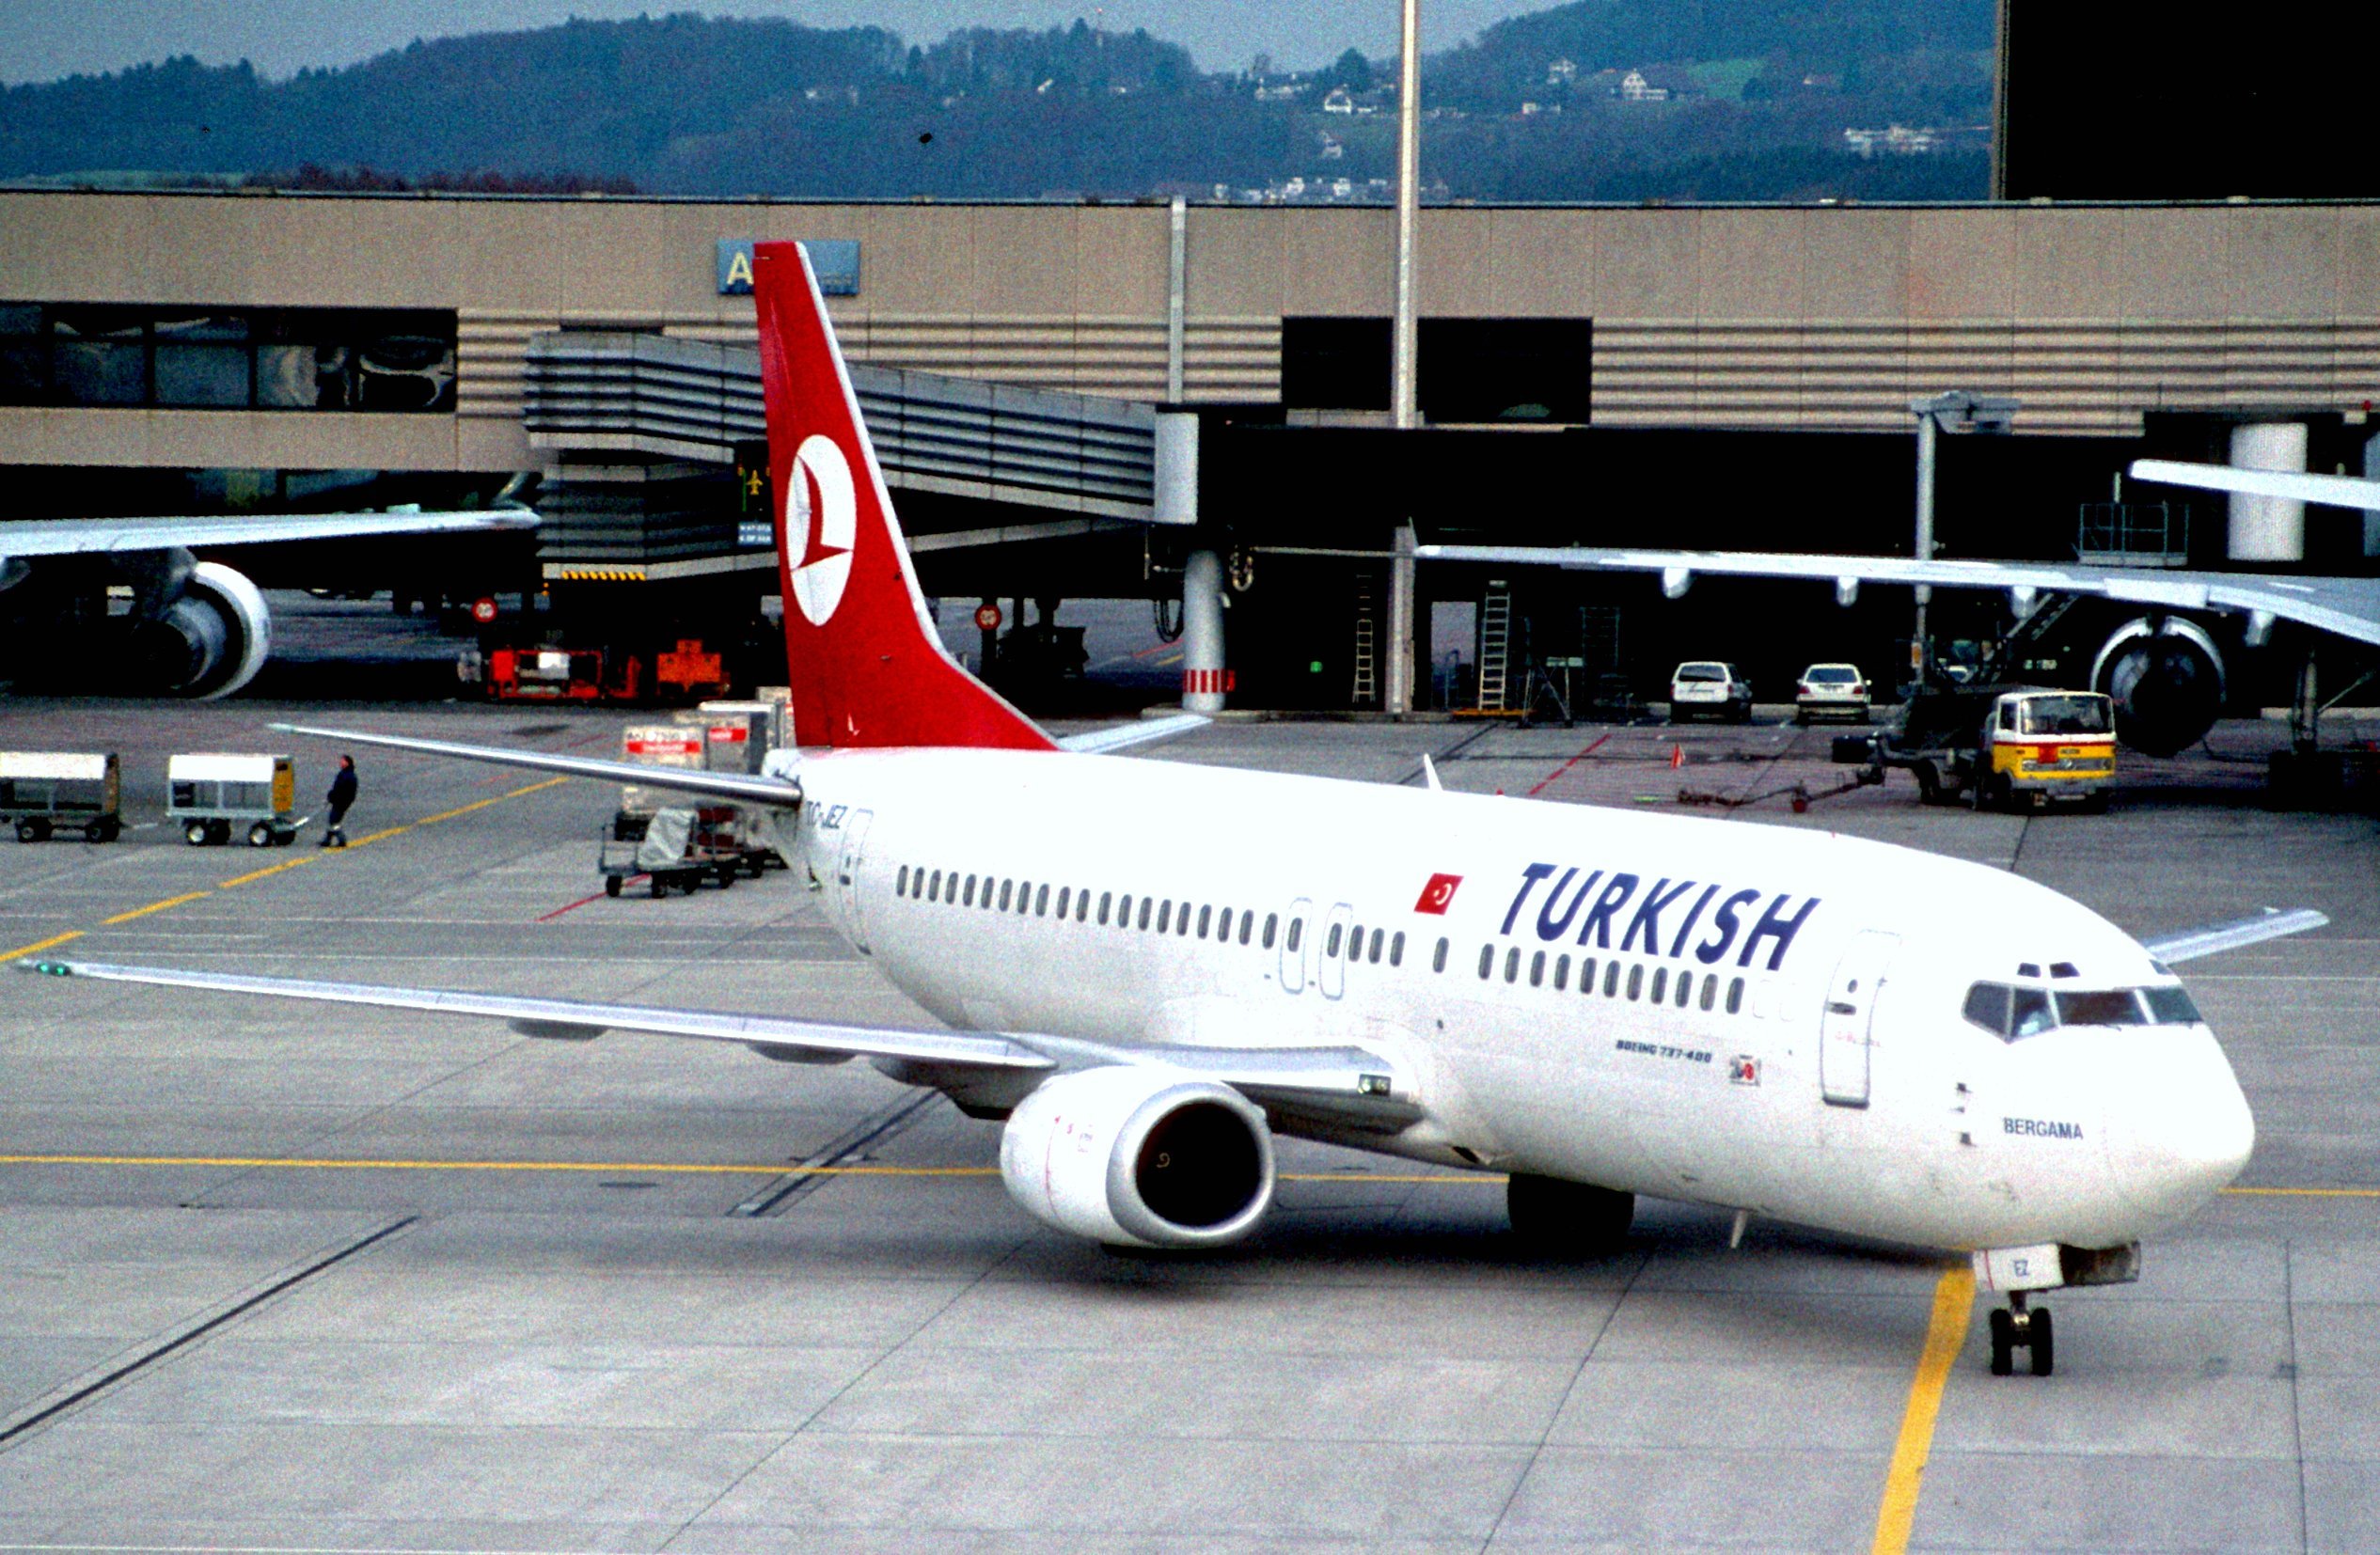 Боинг 737-800 Туркиш Эйрлайнс. Boeing 737 Turkish Airlines. Туркиш Эйрлайнс в Канкун рейс. Thy-13 Japan. Туркиш эйрлайнс купить авиабилеты на русском